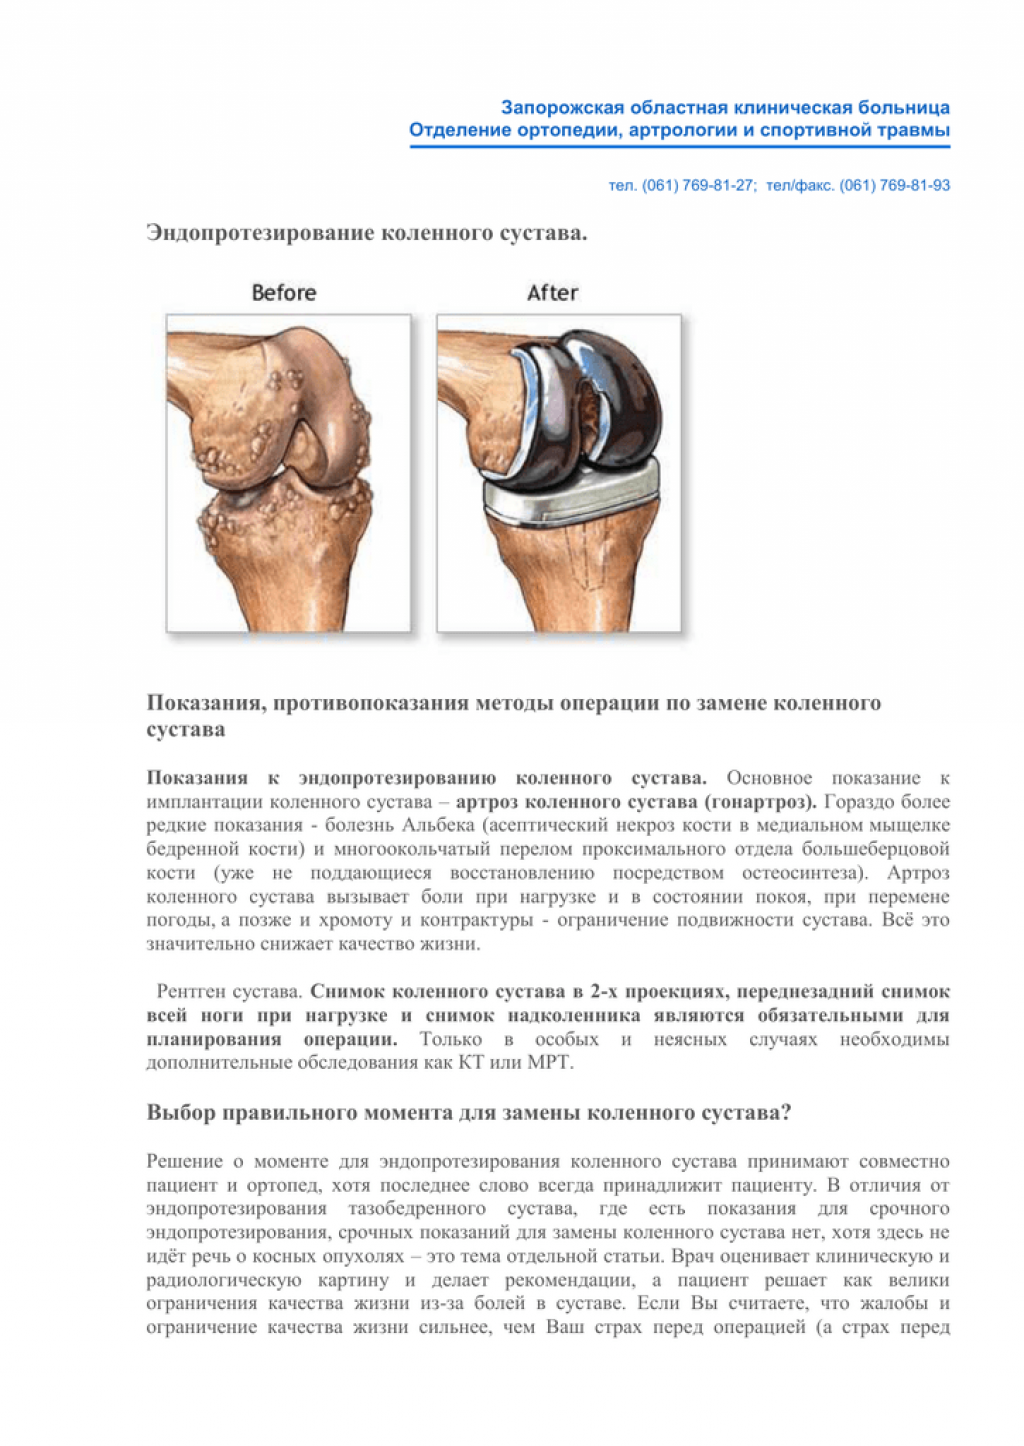 Почему колено после эндопротезирования. Эндопротезирование коленного сустава. Операция тотального эндопротезирования коленного сустава. ТЭП эндопротезирование коленного сустава. Тотальное эндопротезирование коленного сустава схема операции.